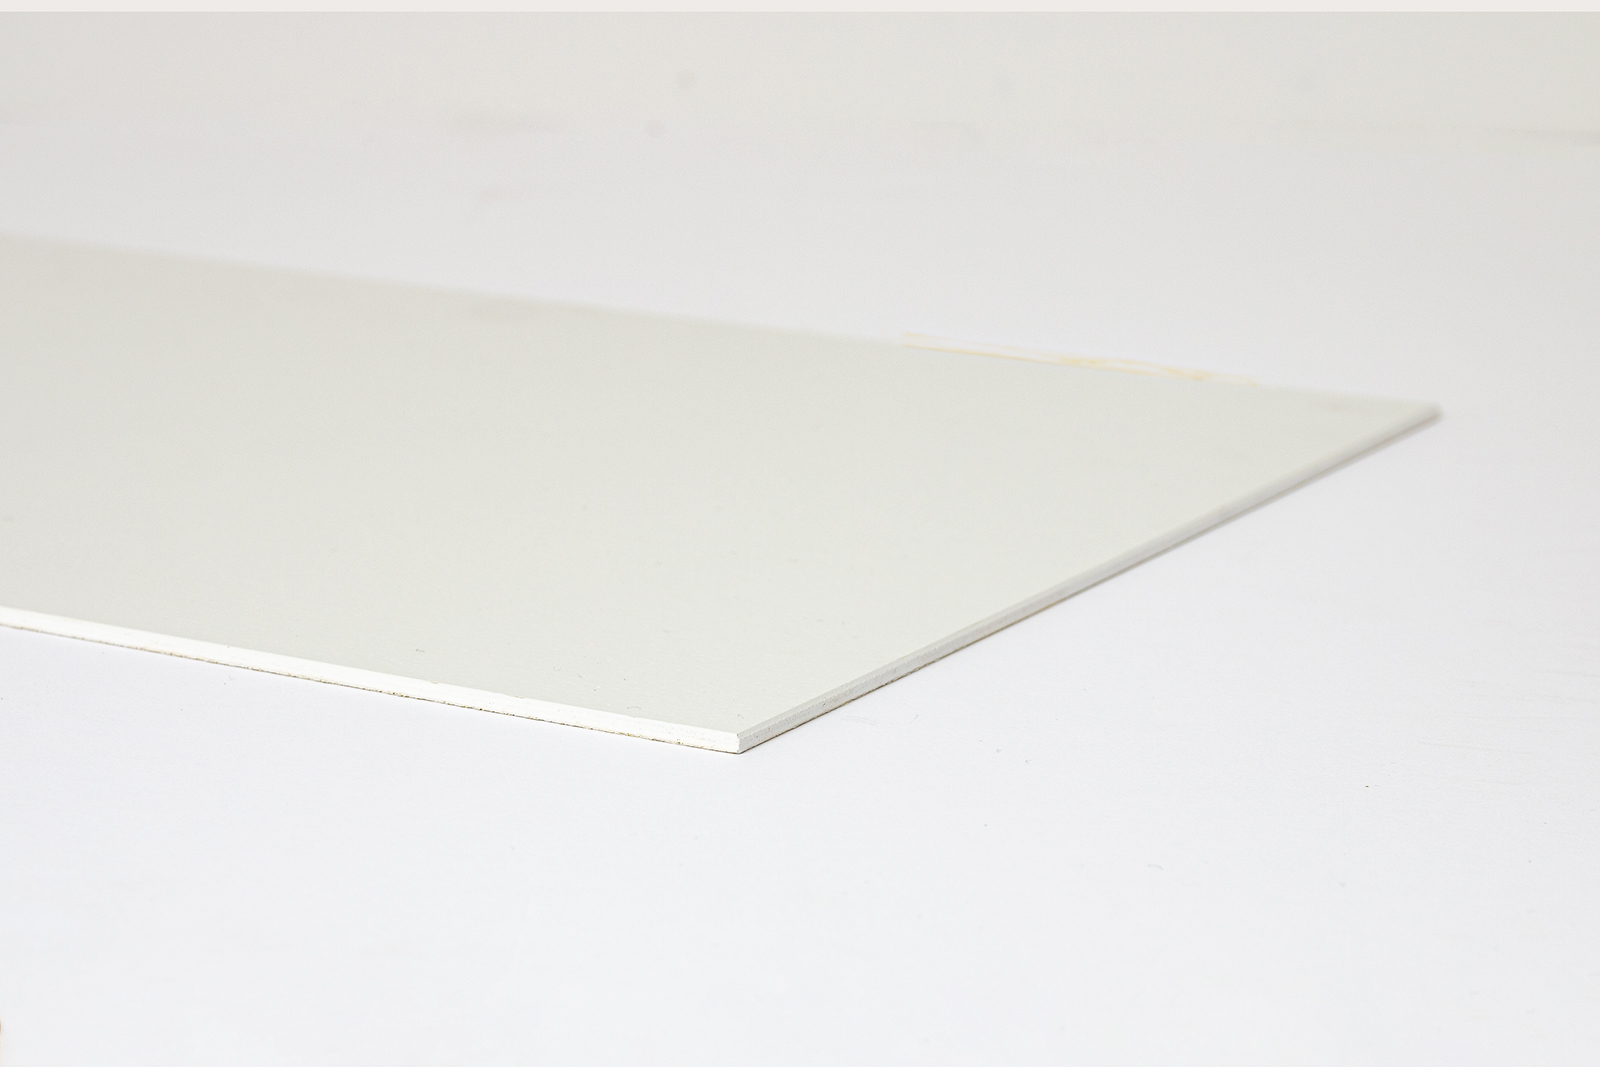 塗装のキッチンパネル タッチアップ材 KB-OT001-07-G248 小口にホワイトのタッチアップ材を塗装した仕上がり。角はサンドペーパーで面取りしてあります